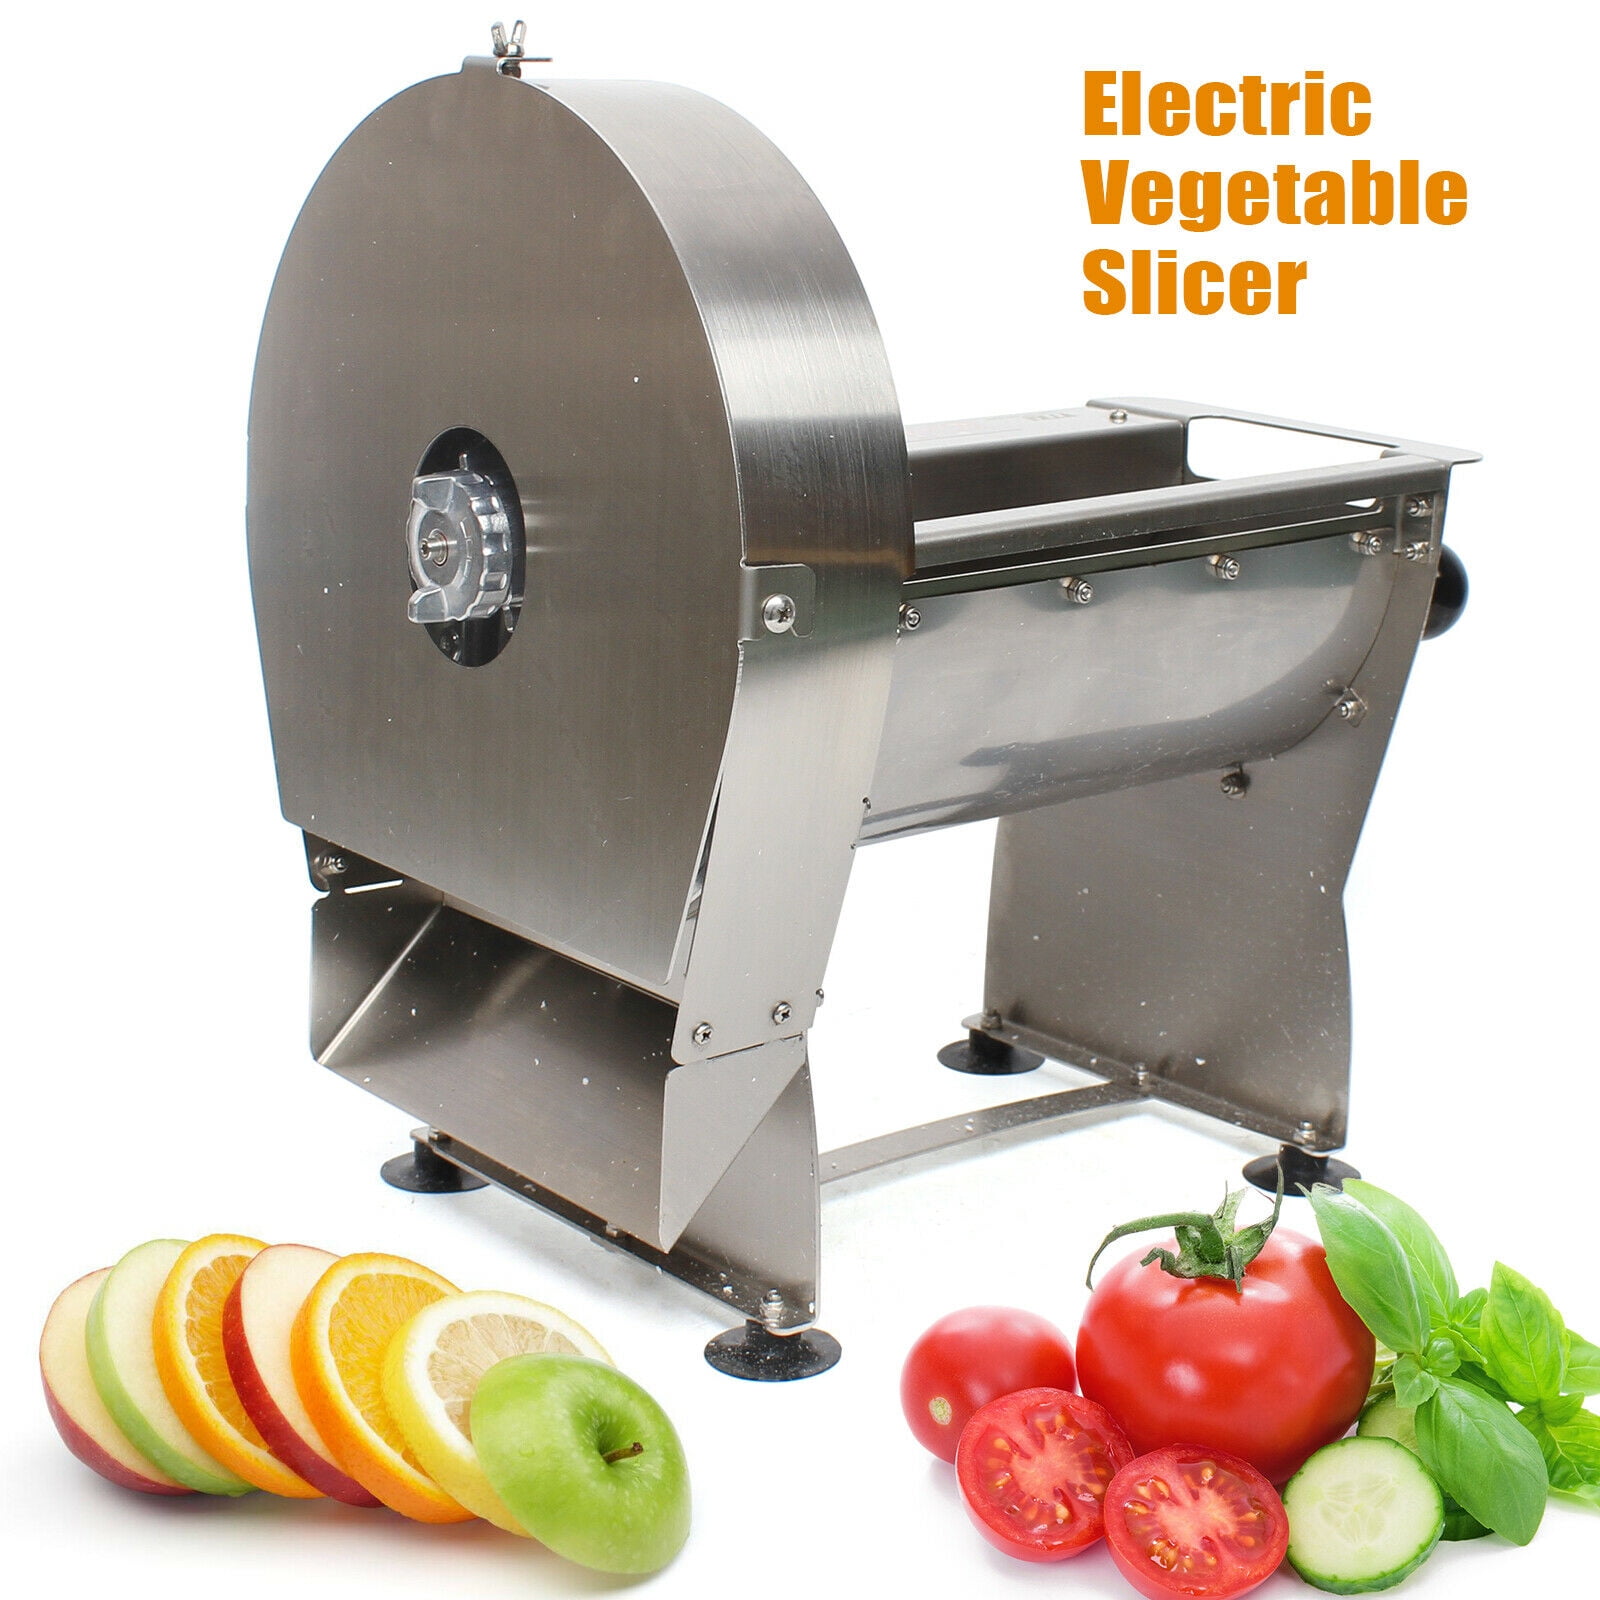 DALELEE Electric Fruit And Vegetable Slicer